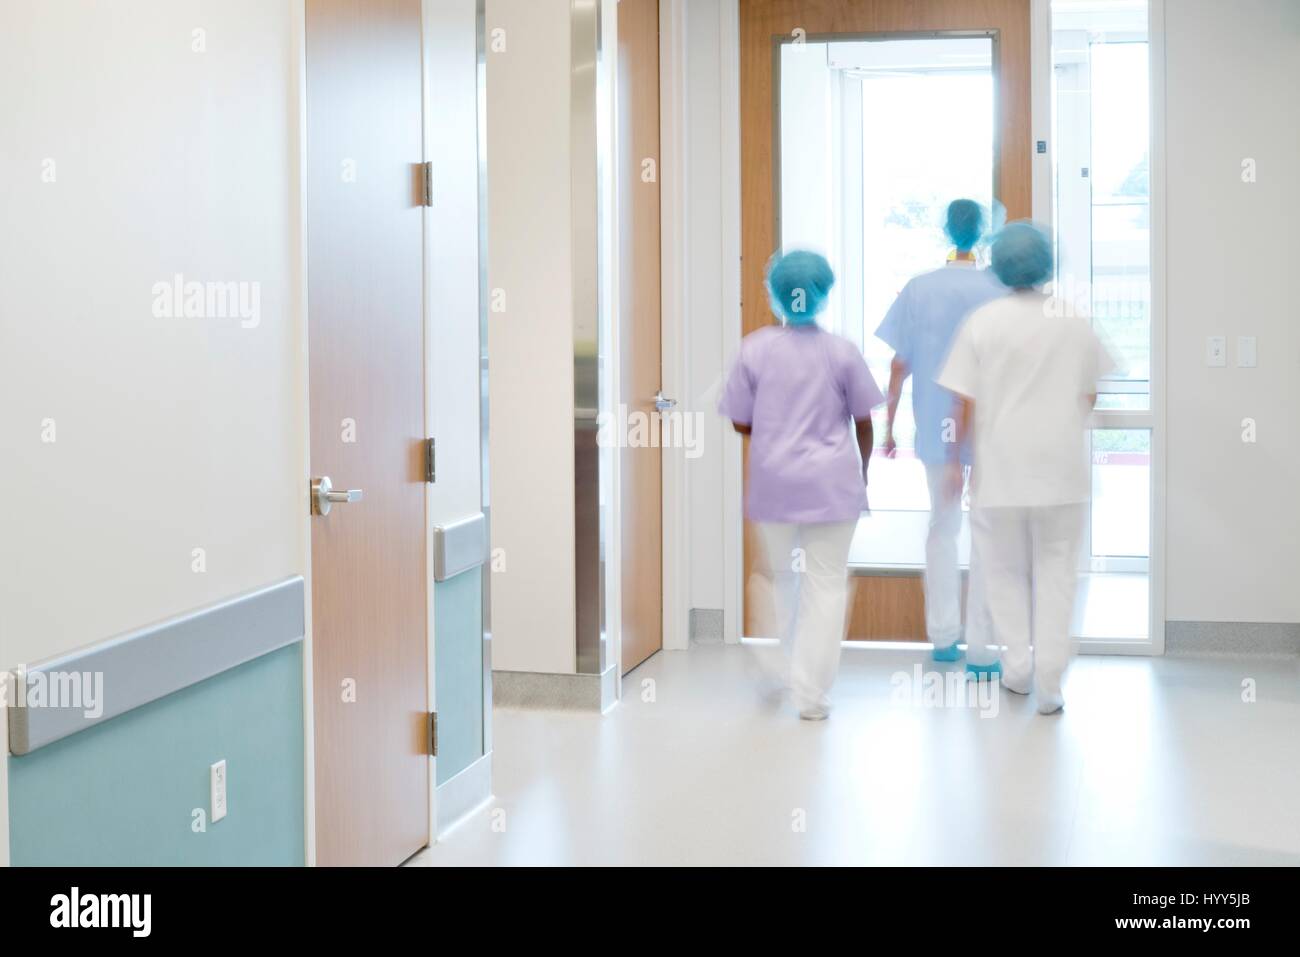 El personal médico del hospital caminando por el pasillo. Foto de stock